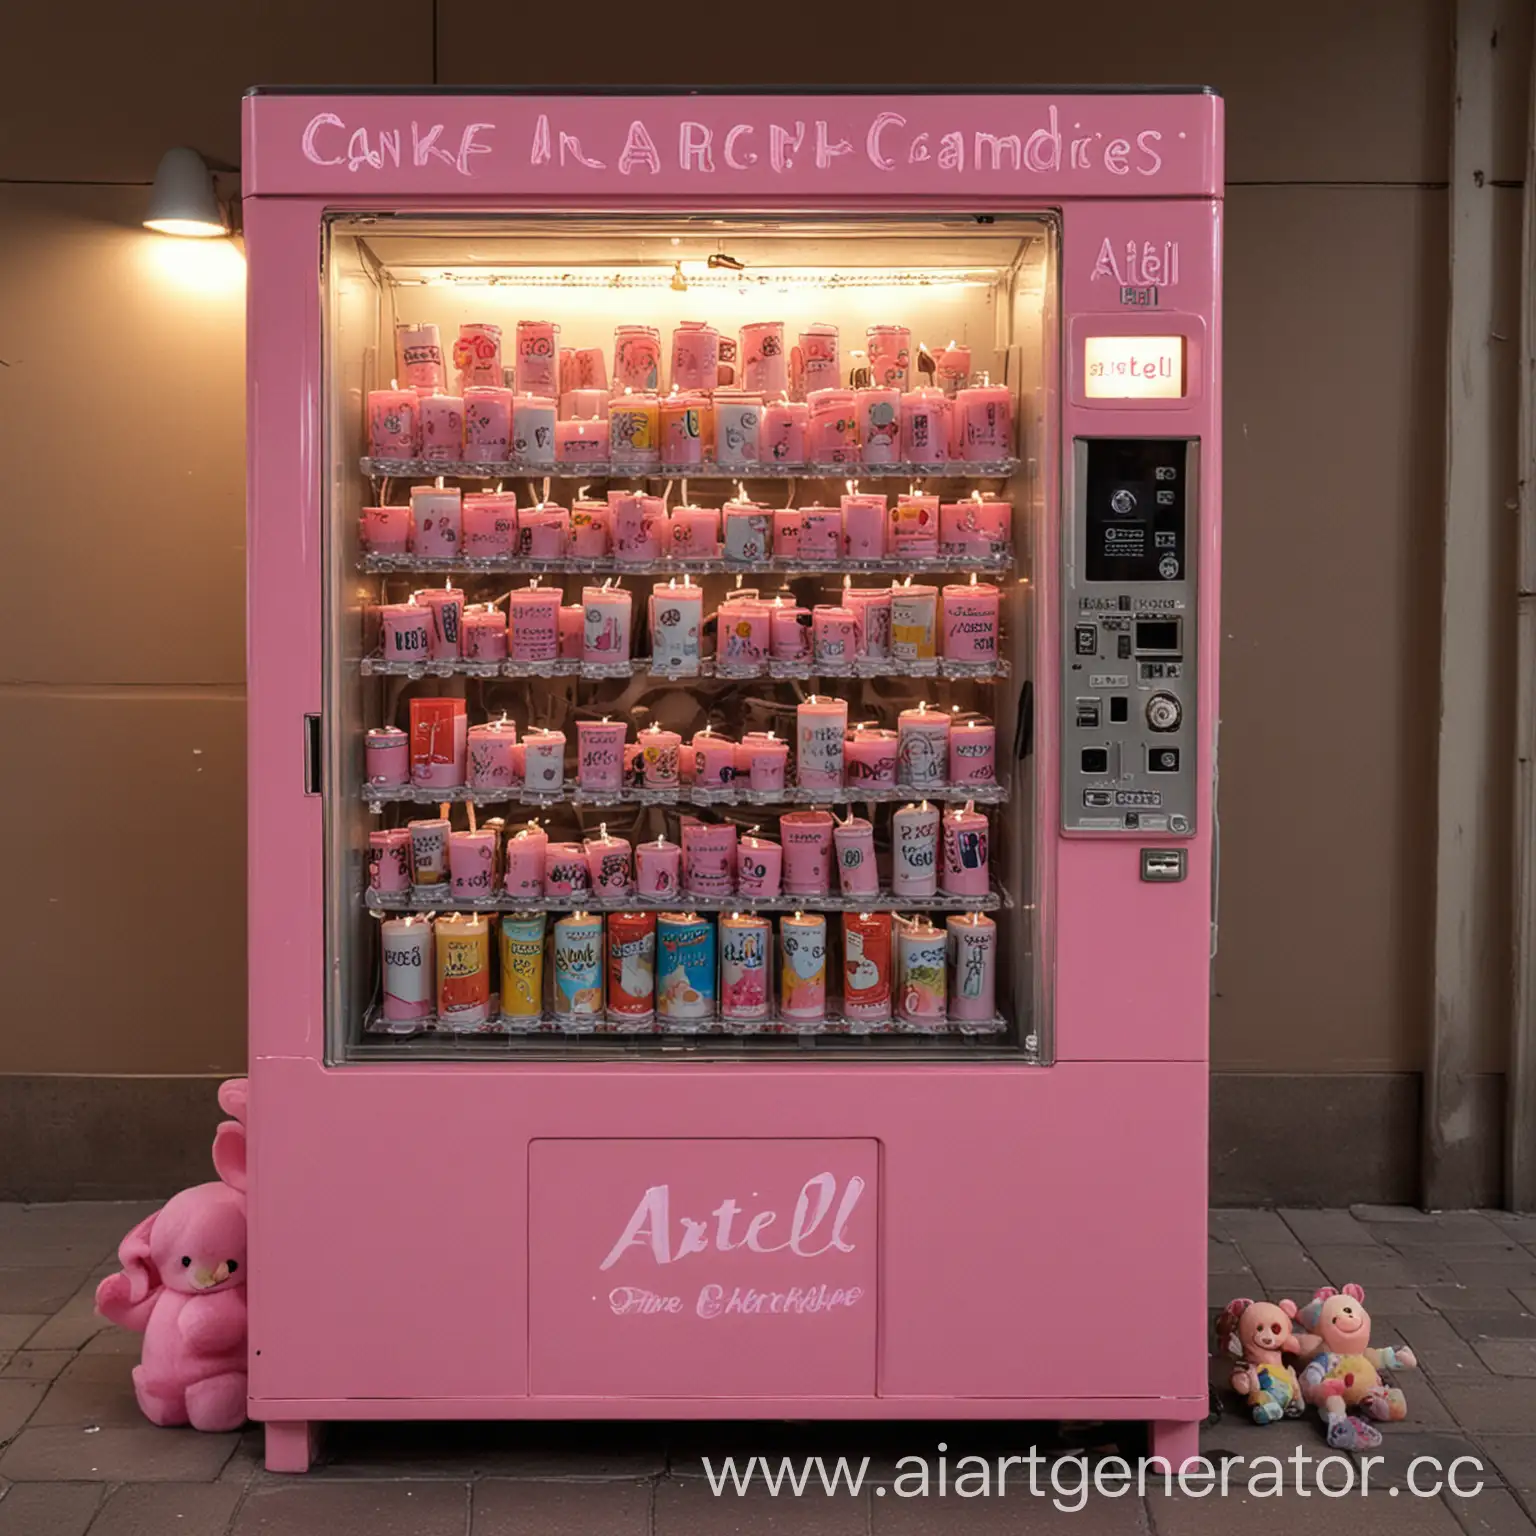 автомат с игрушками в розовом цвете наполненный свечами и сверху на автомате надпись Arteli